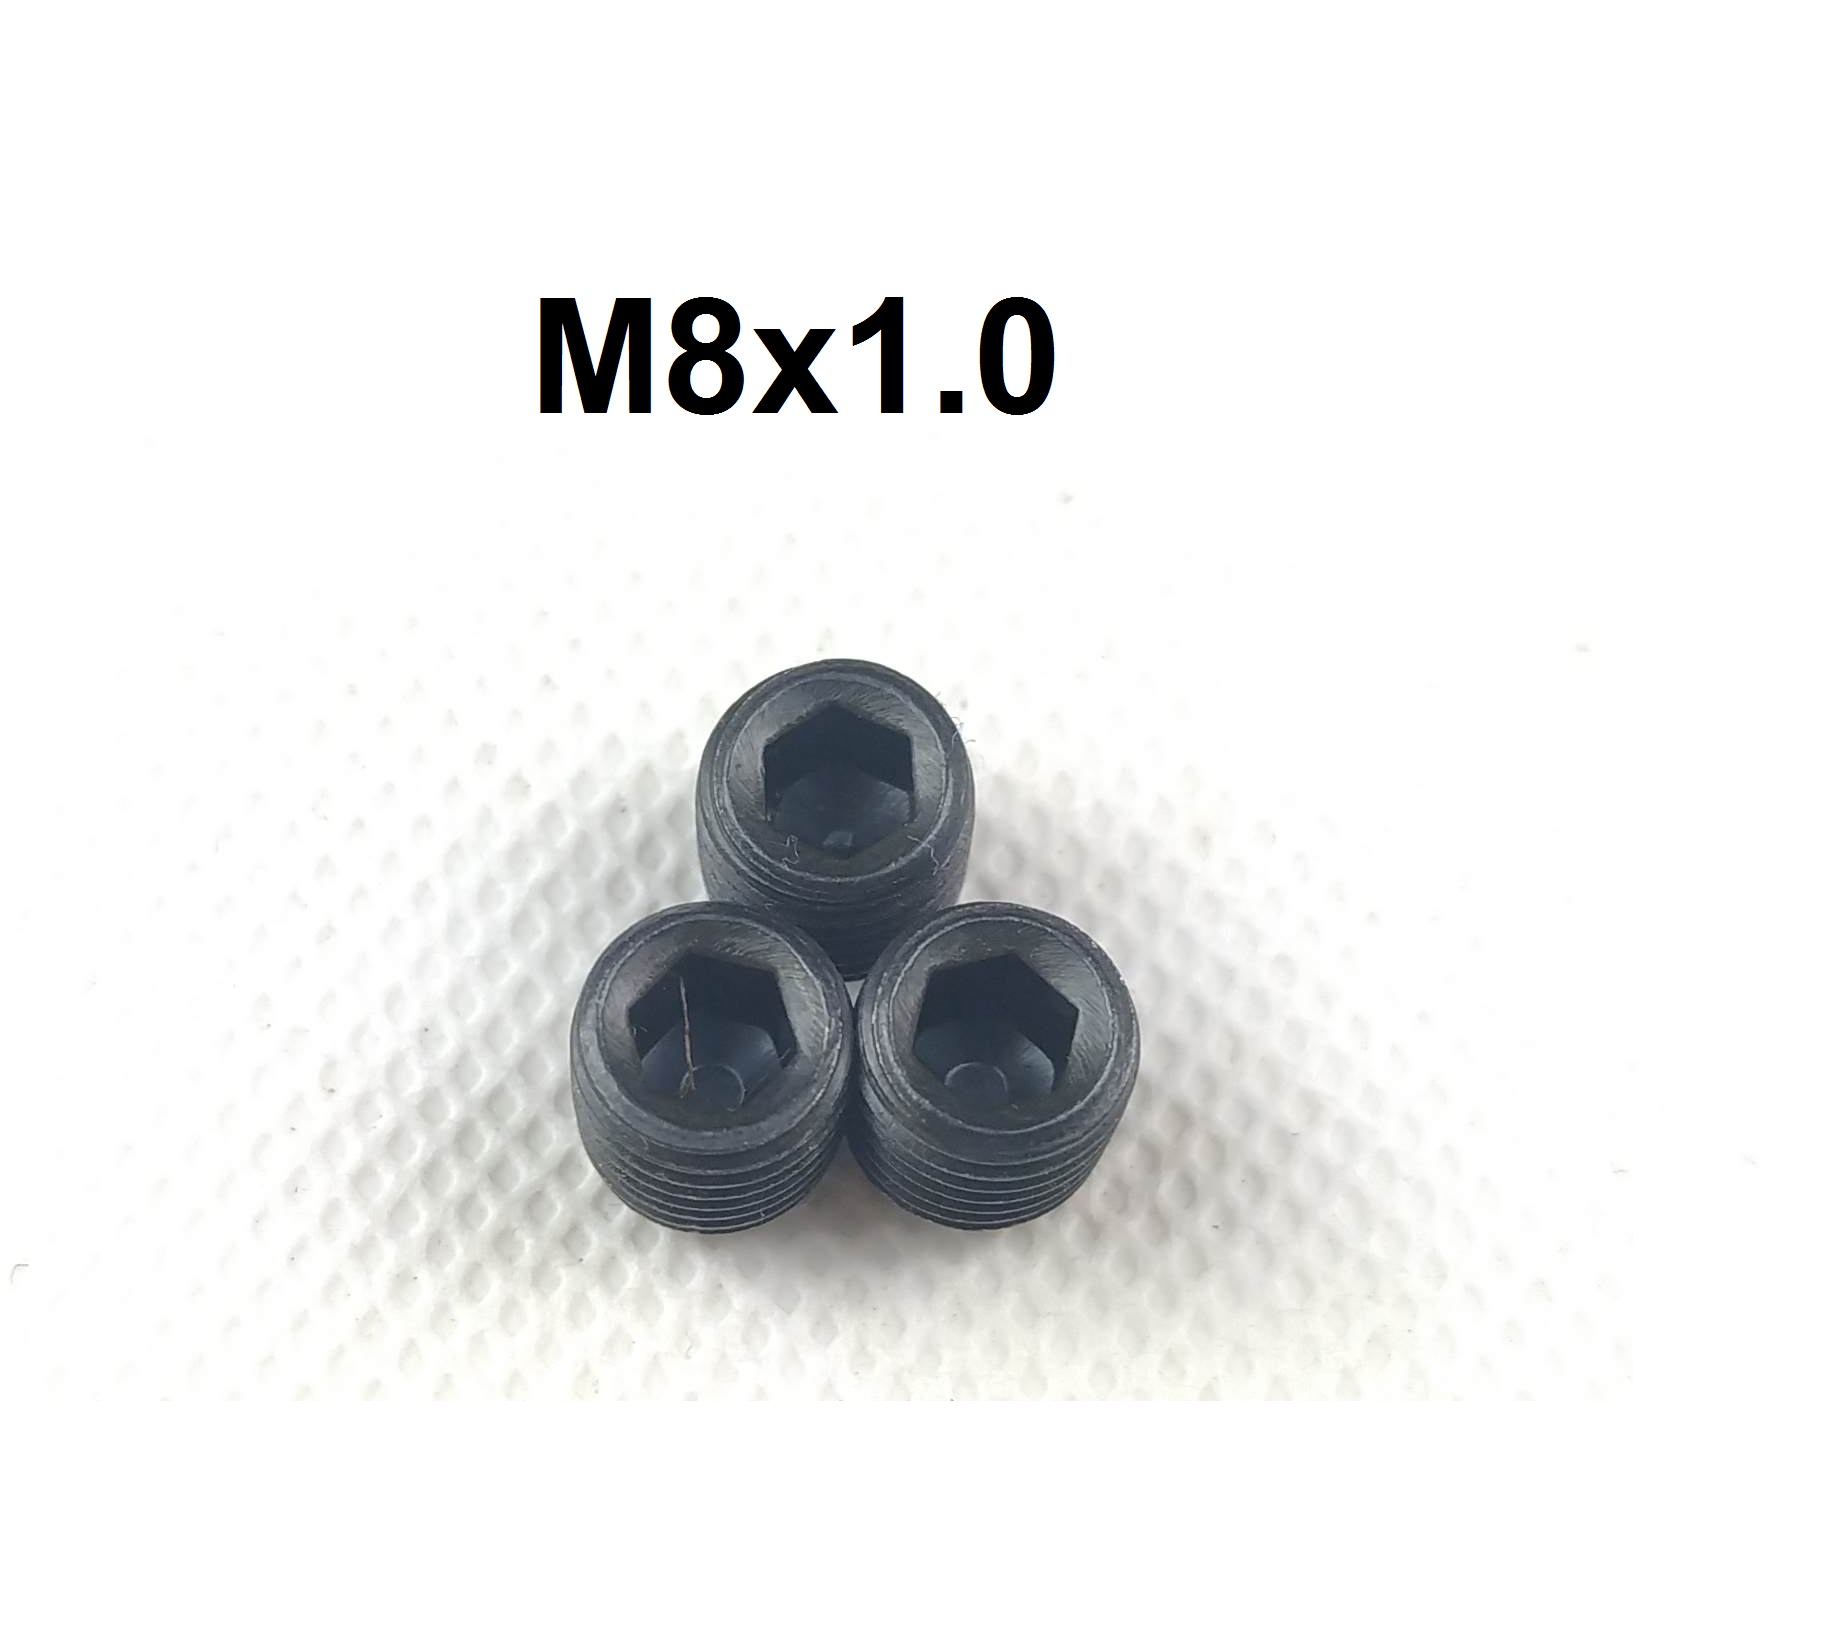 น๊อตอุดควิก/เกจ เกลียว M10x1.0 และ M8x1.0 (ชุด 3 ชิ้น)